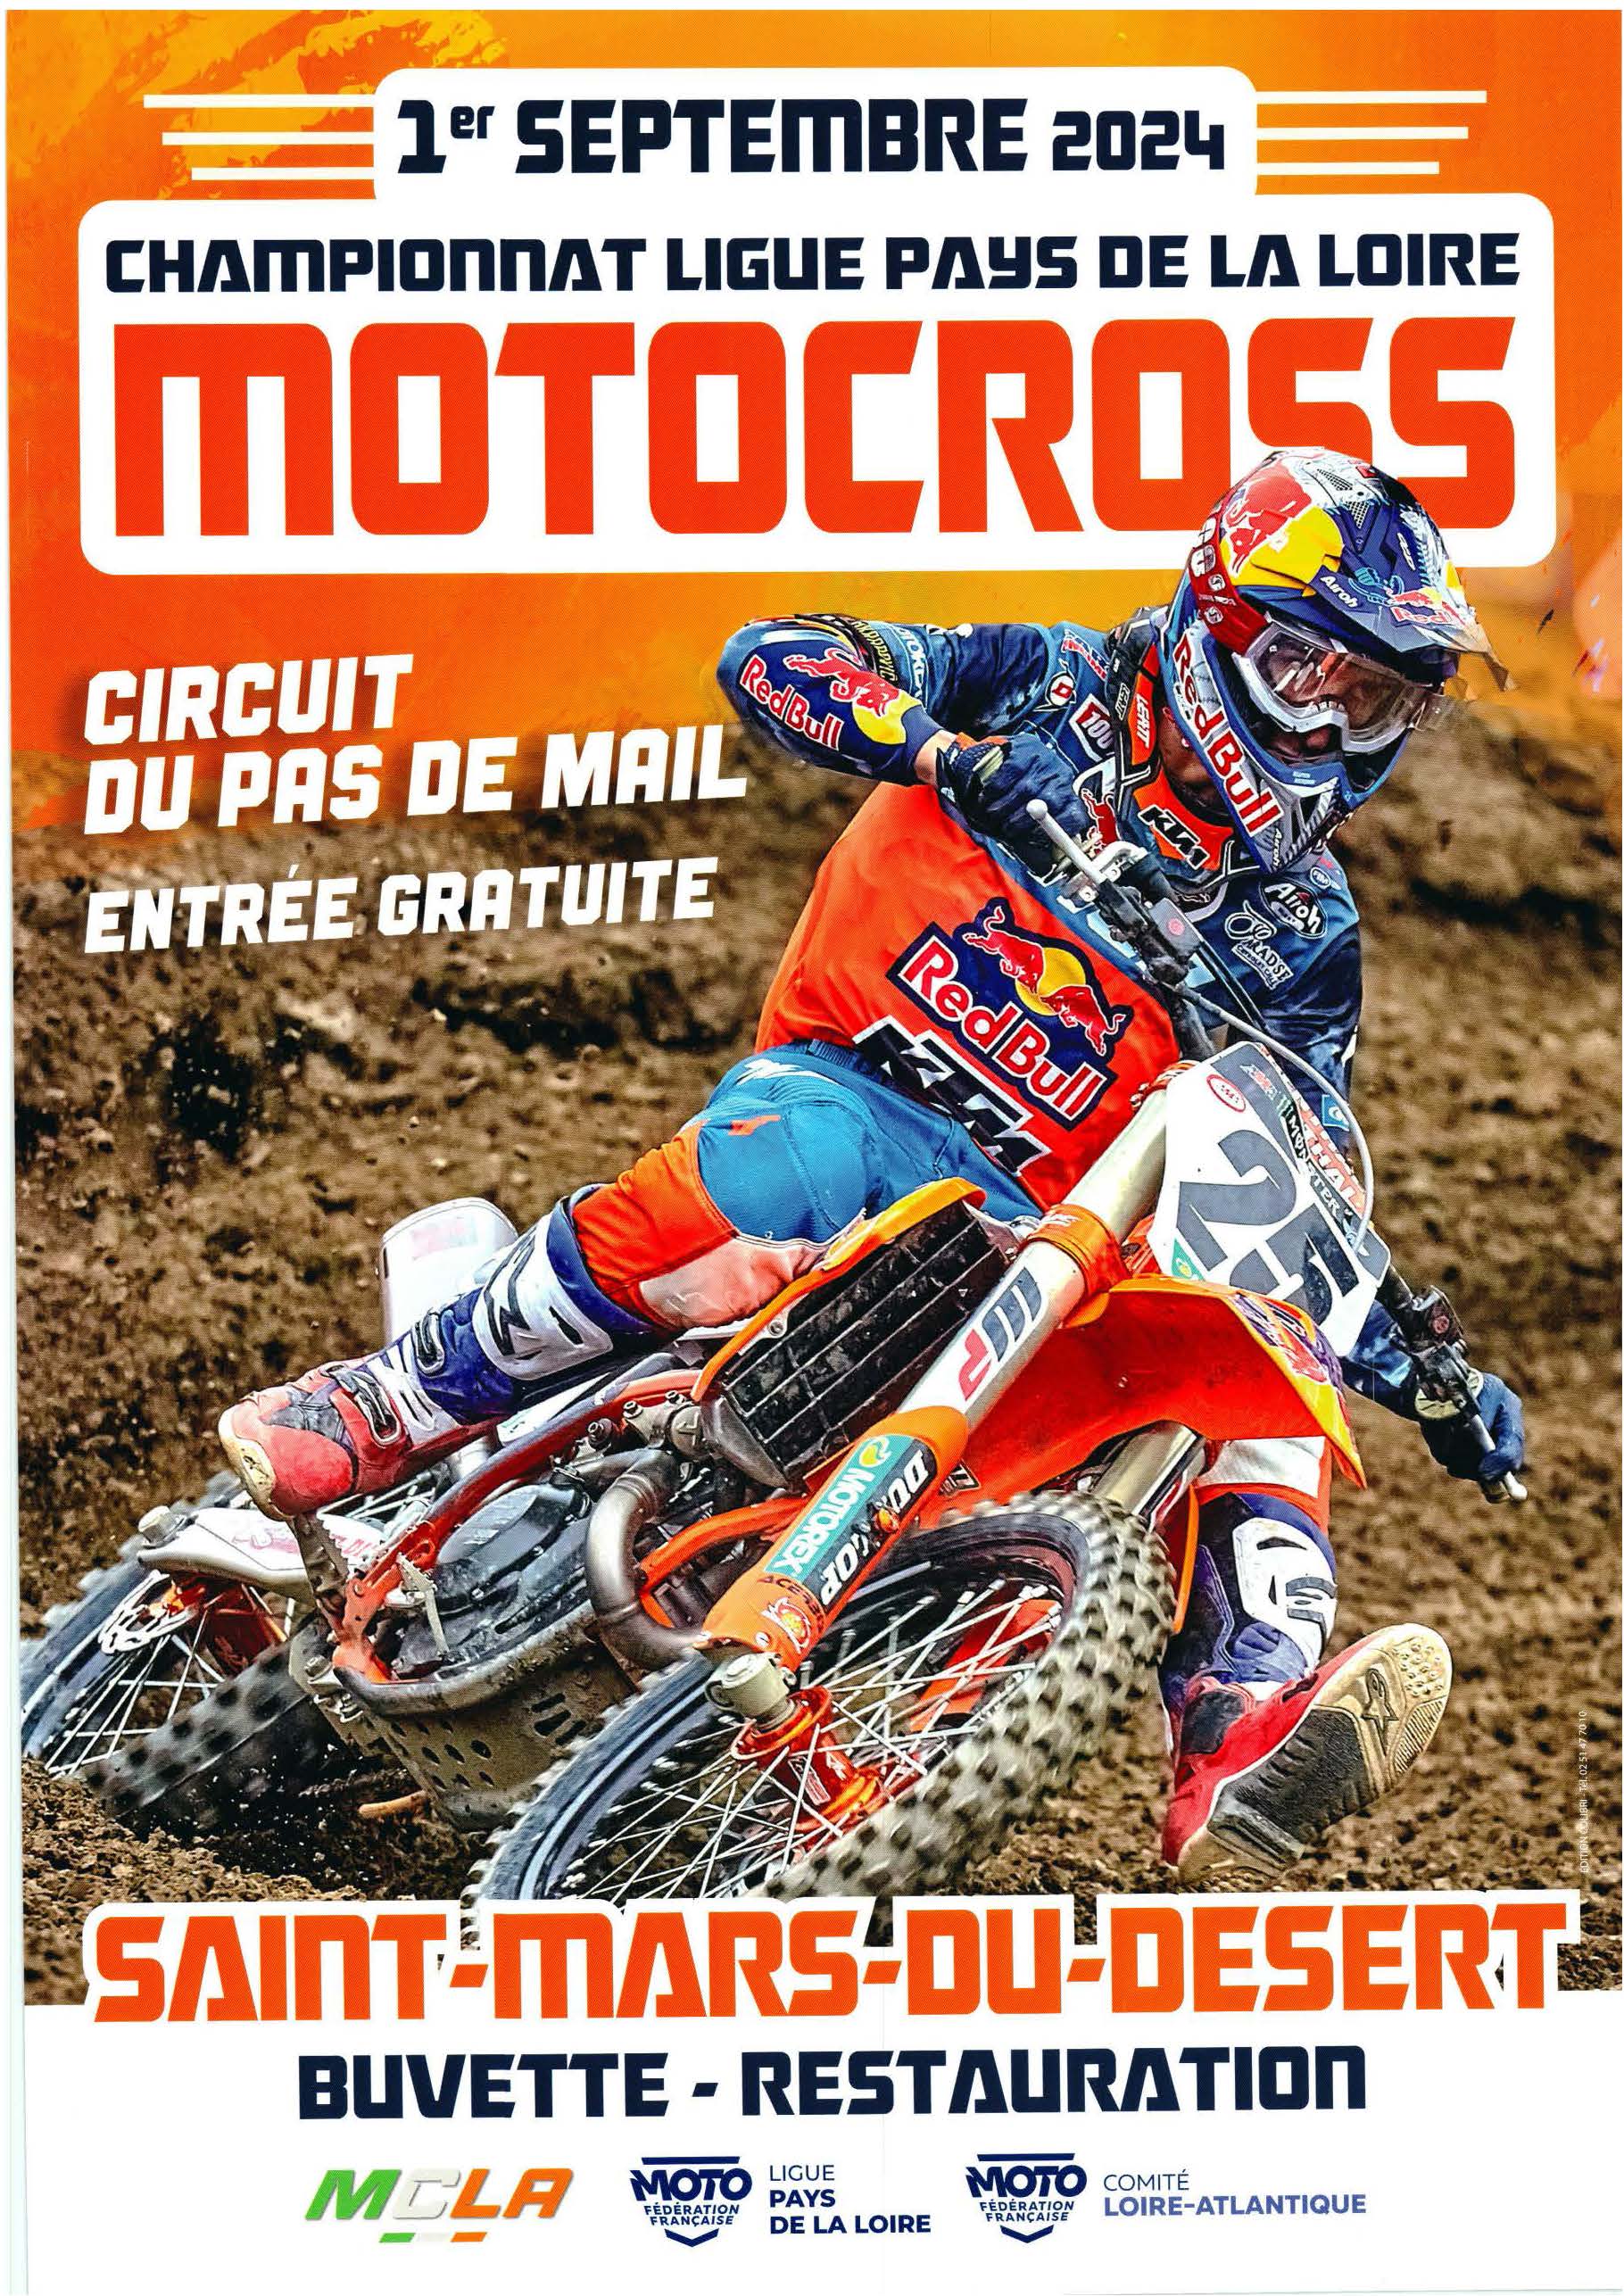 Info Motocross - Saint Mars du Désert 1er septembre